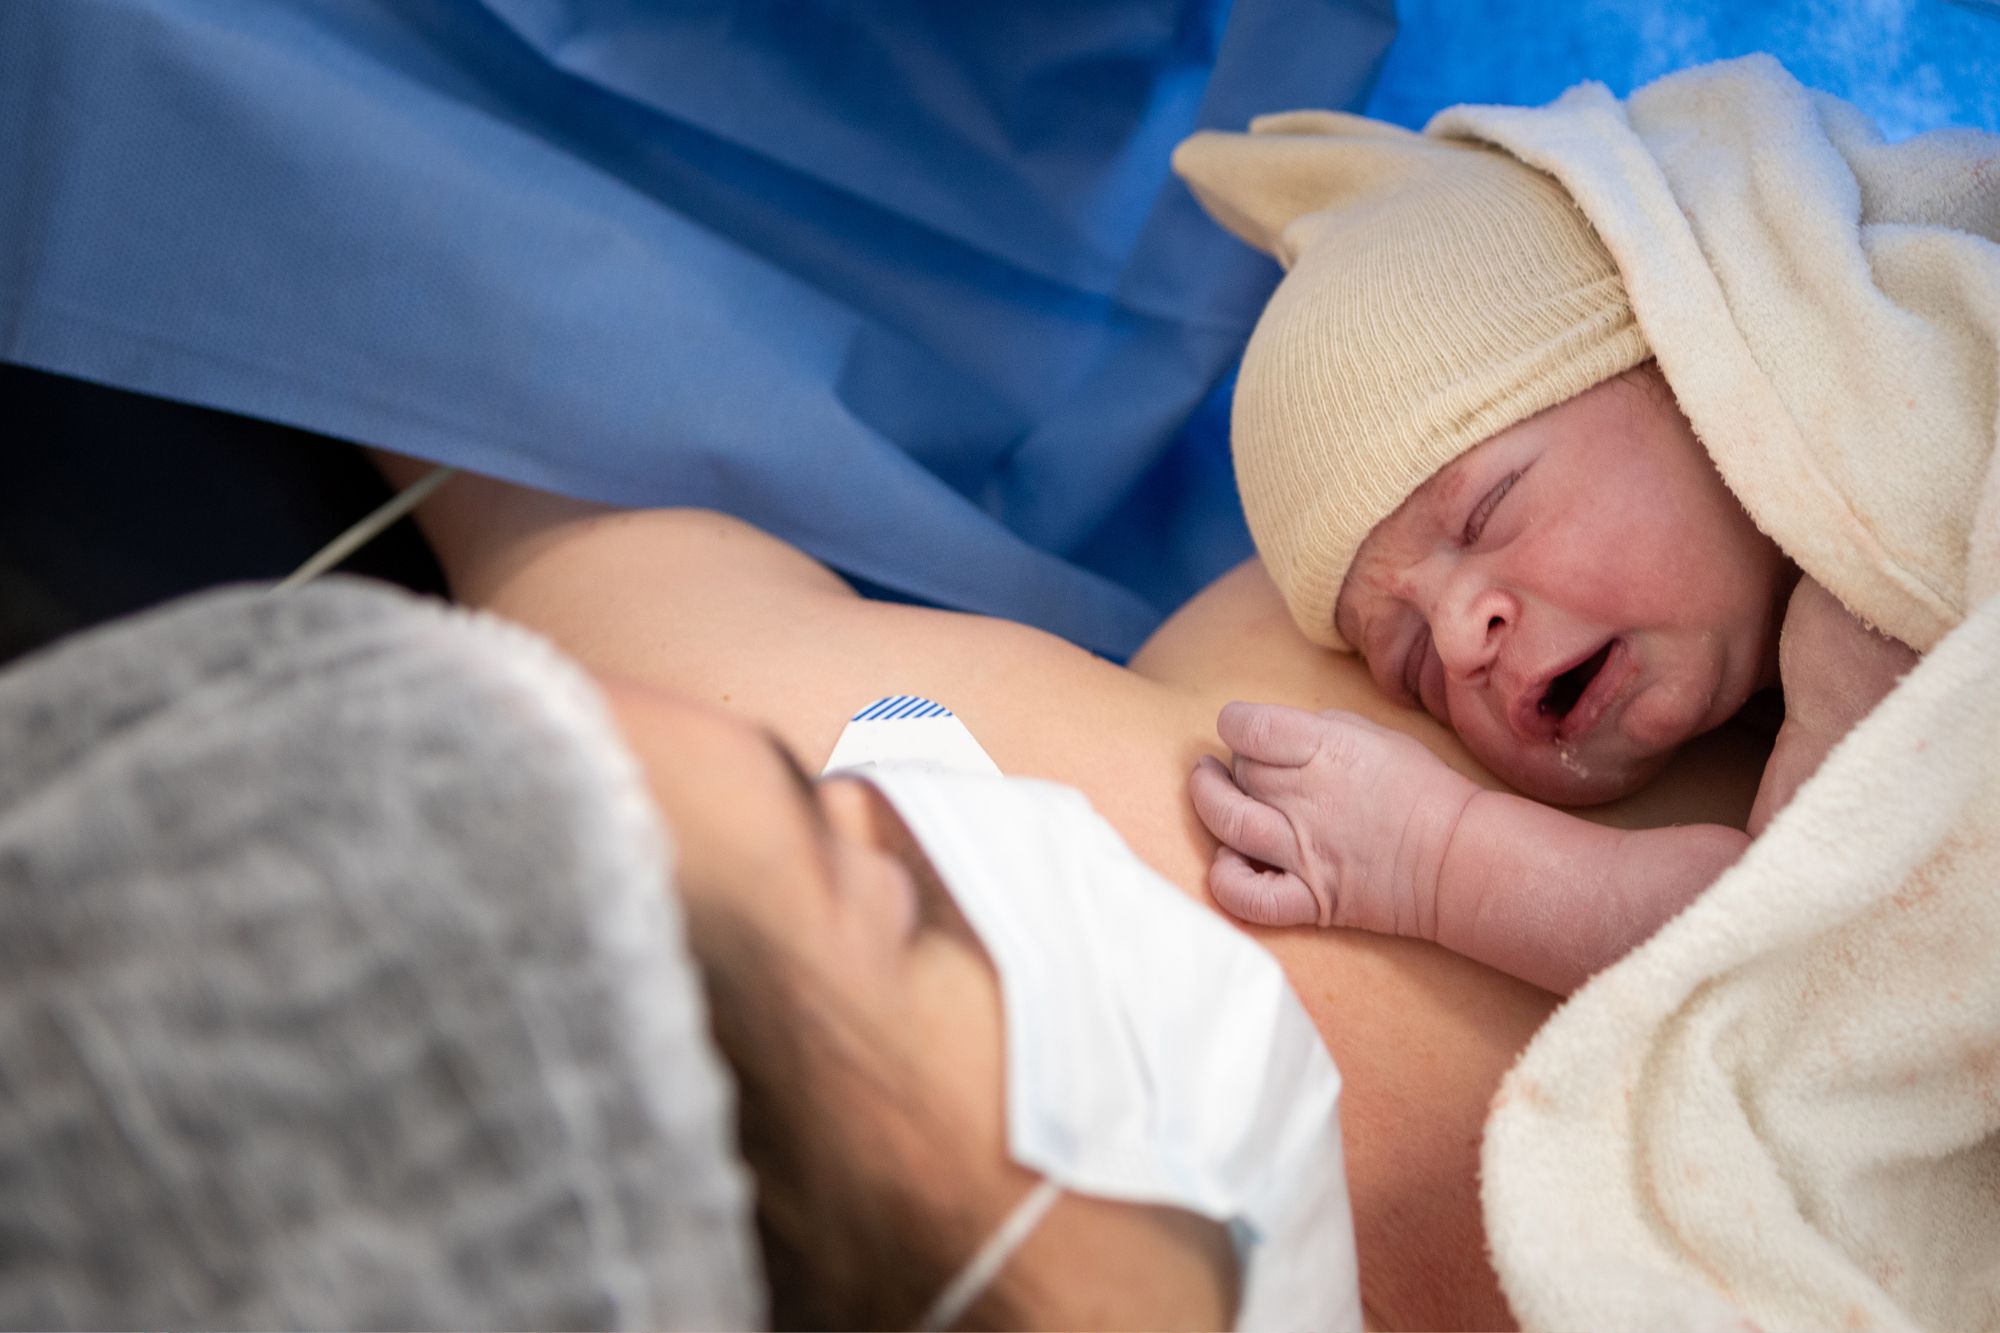 Cesareo e papà, come assistere al parto: “Consentire il bonding”